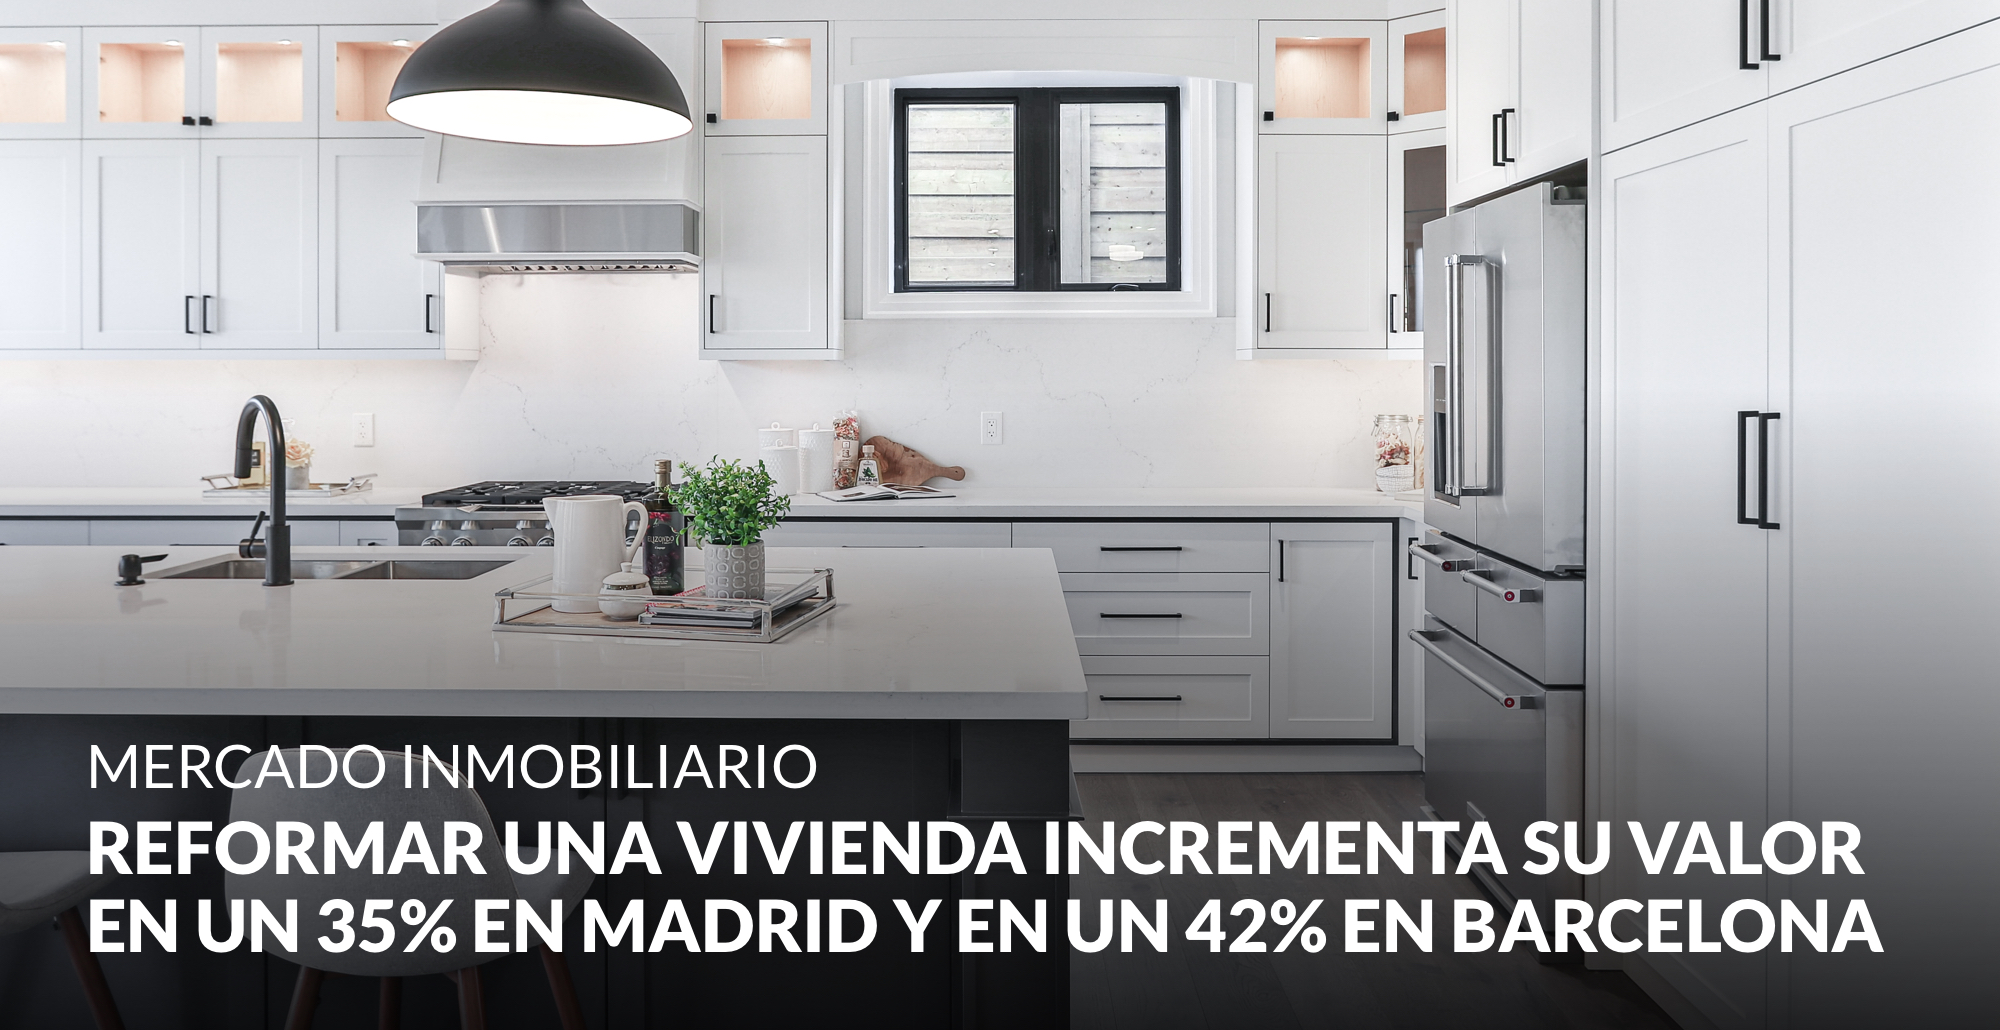 La reforma integral de una vivienda permite incrementar su valor en un 35% en Madrid y en un 42% en Barcelona